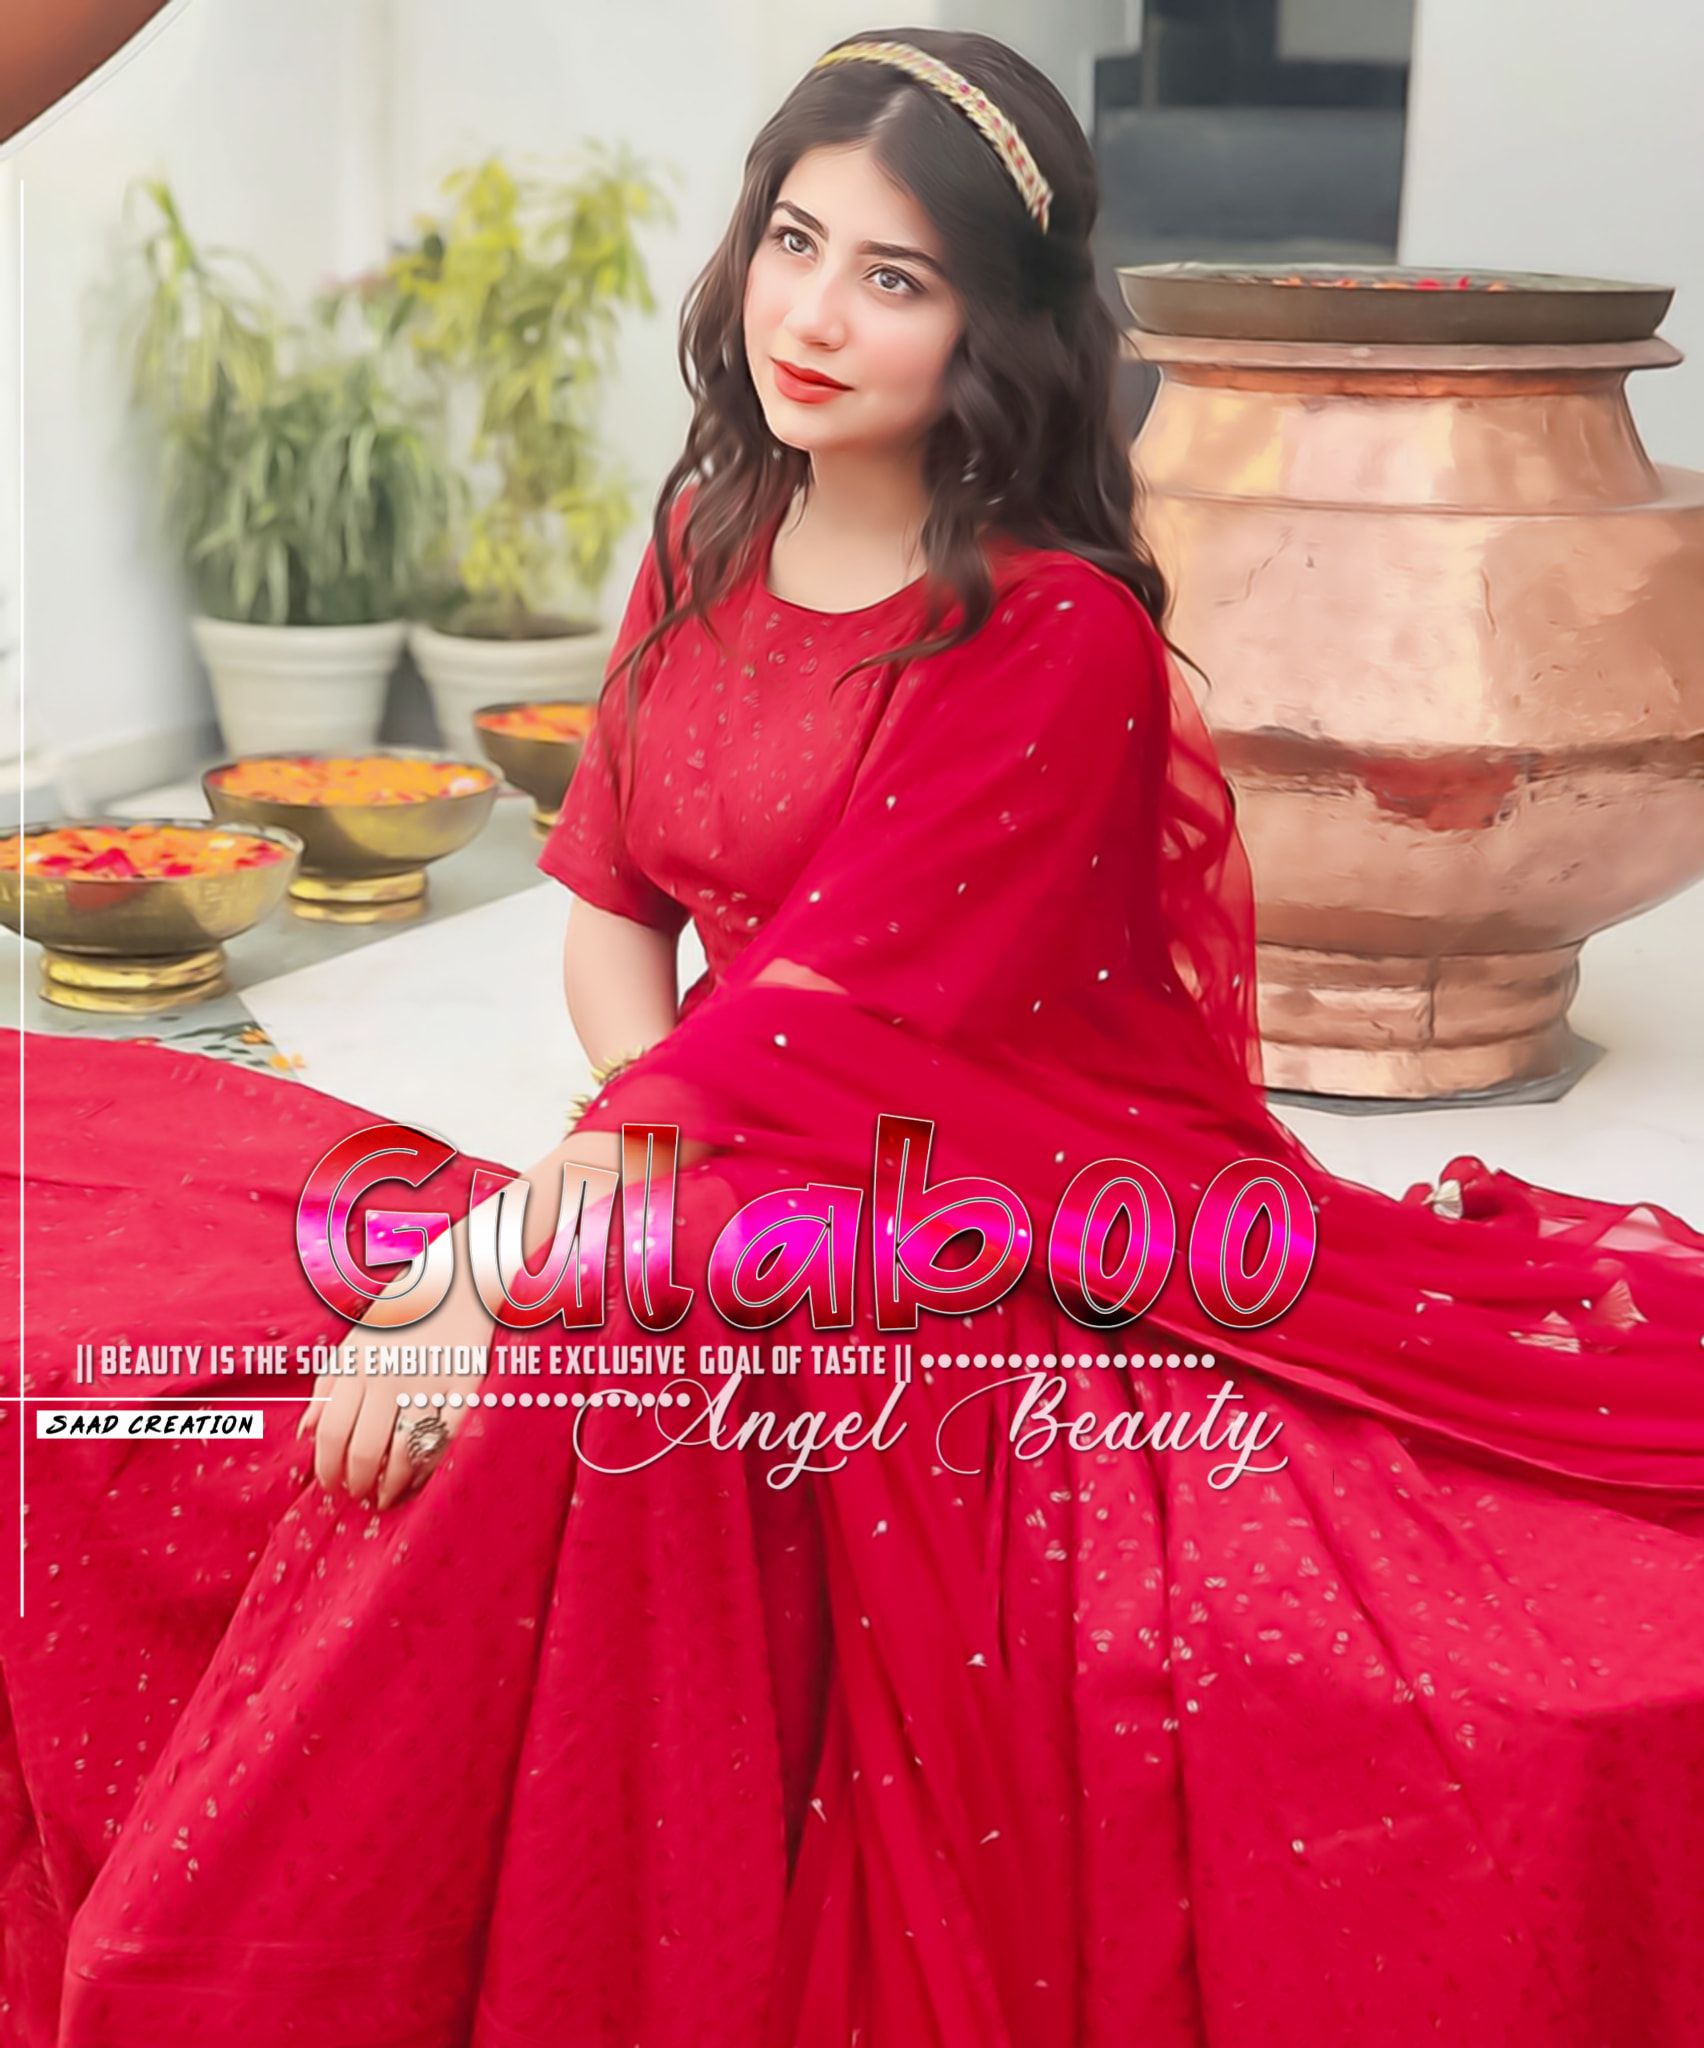 20+] Girl Red Dress Wallpapers - WallpaperSafari